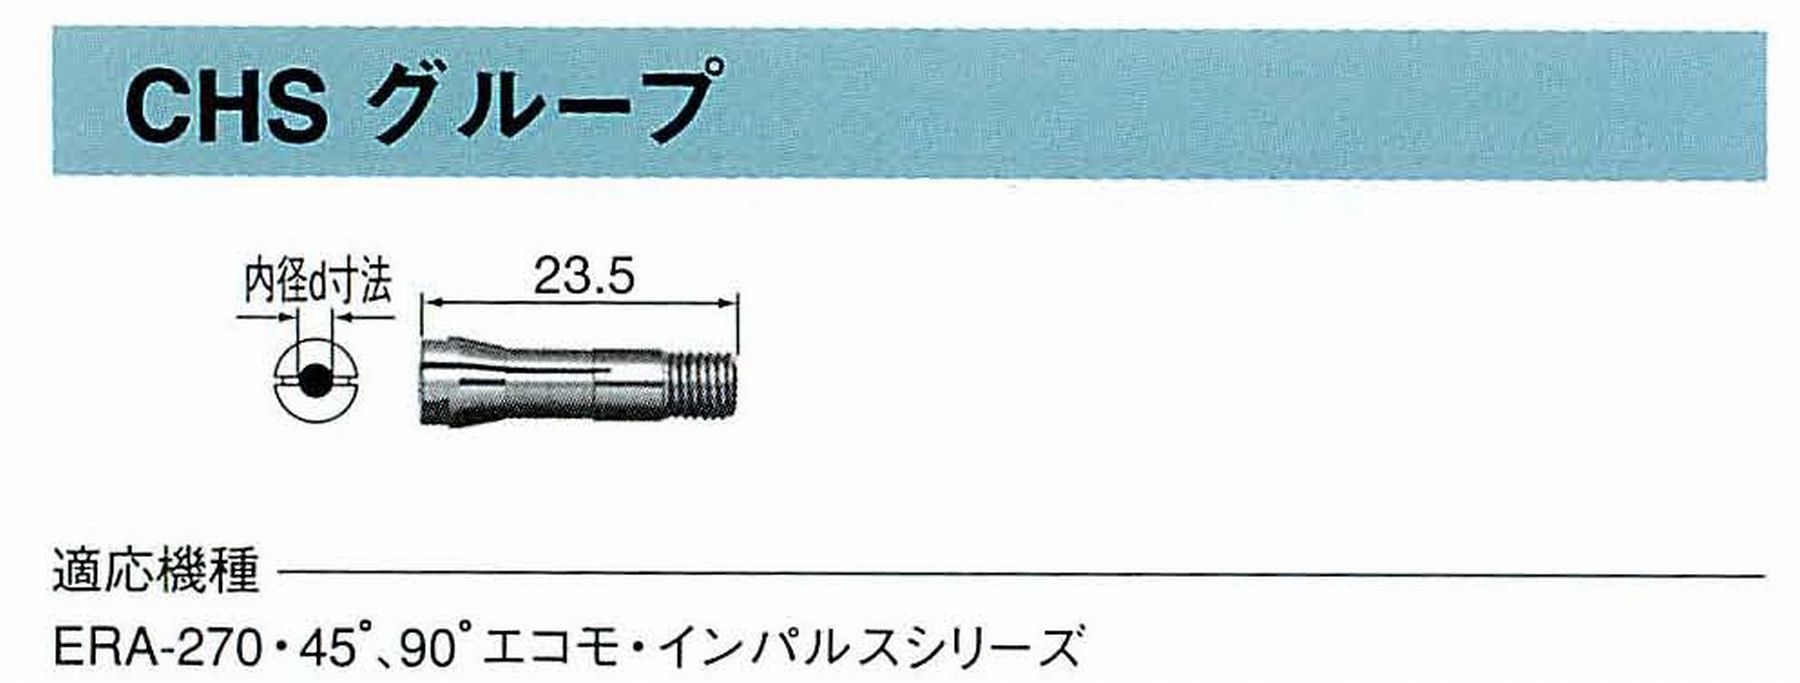 ナカニシ/NAKANISHI コレットチャック コード番号 90522 型式 CHS-2.2 内径:Φ2.2